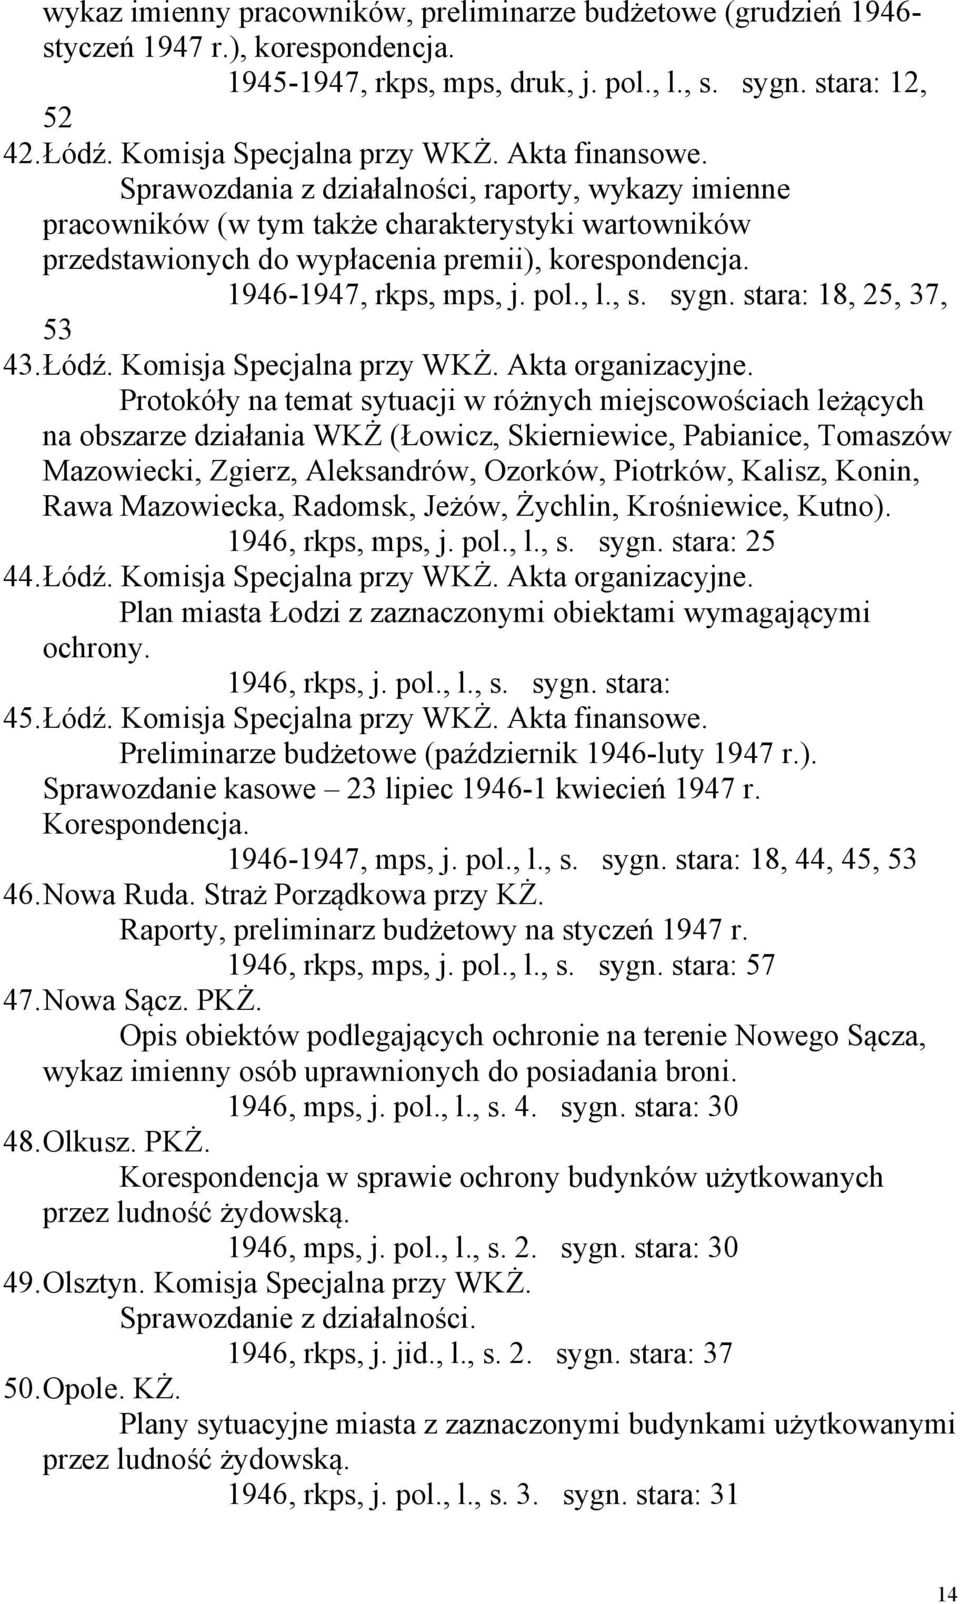 Sprawozdania z działalności, raporty, wykazy imienne pracowników (w tym także charakterystyki wartowników przedstawionych do wypłacenia premii), korespondencja. 1946-1947, rkps, mps, j. pol., l., s.